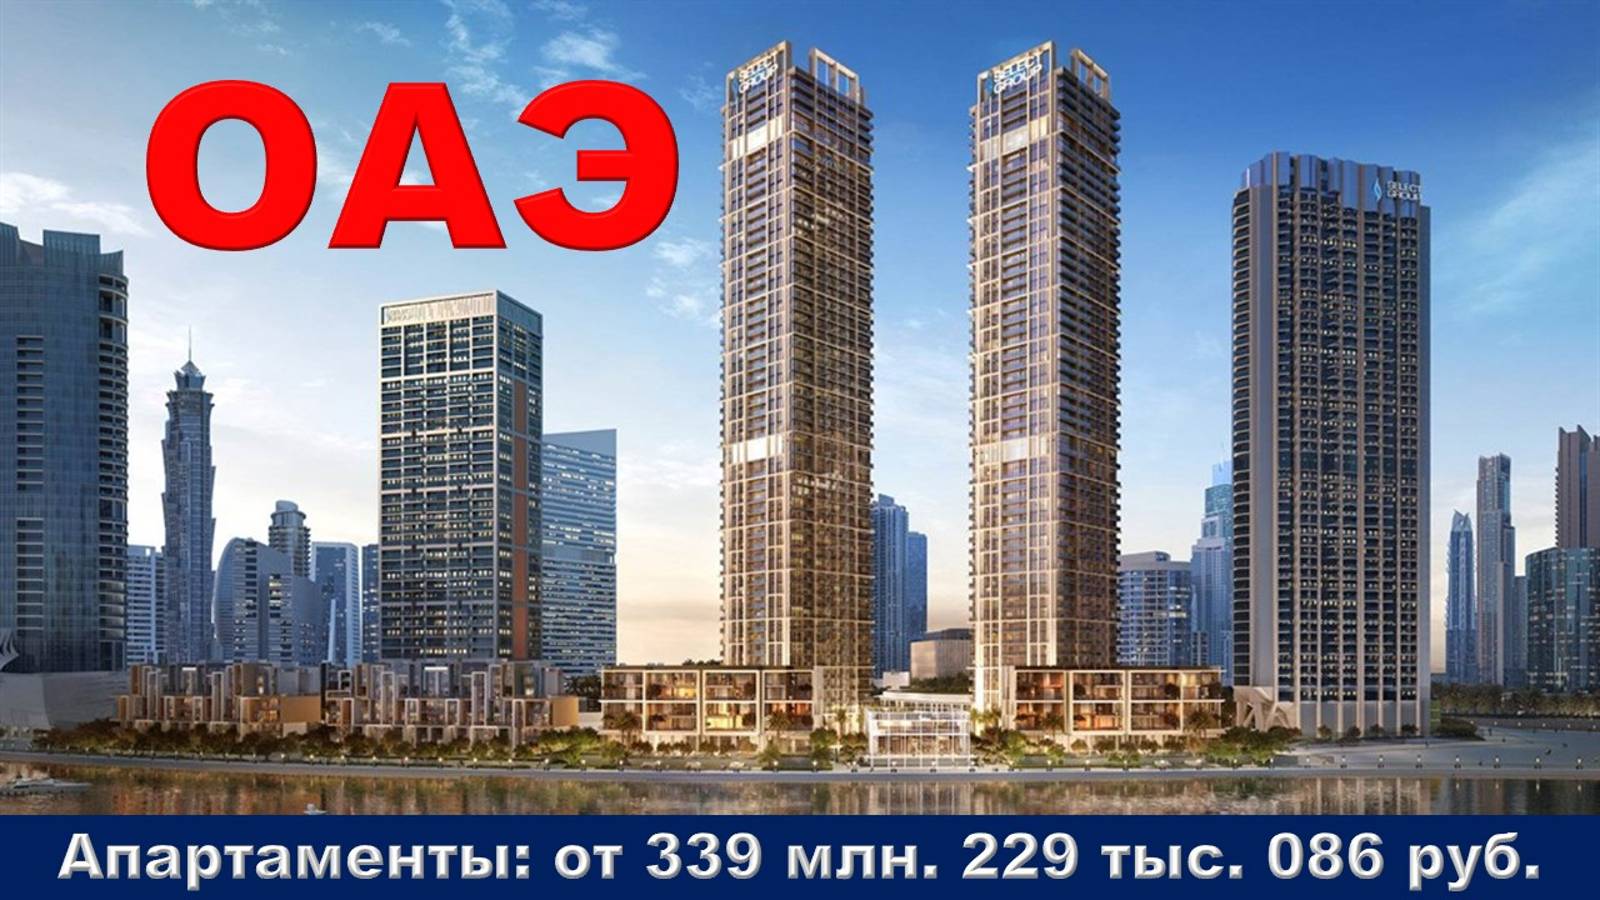 ОАЭ. Апартаменты от 339 млн. 229 тыс. 086 руб. в городе Дубай.  Бизнес Бей р-н, 4 ул.